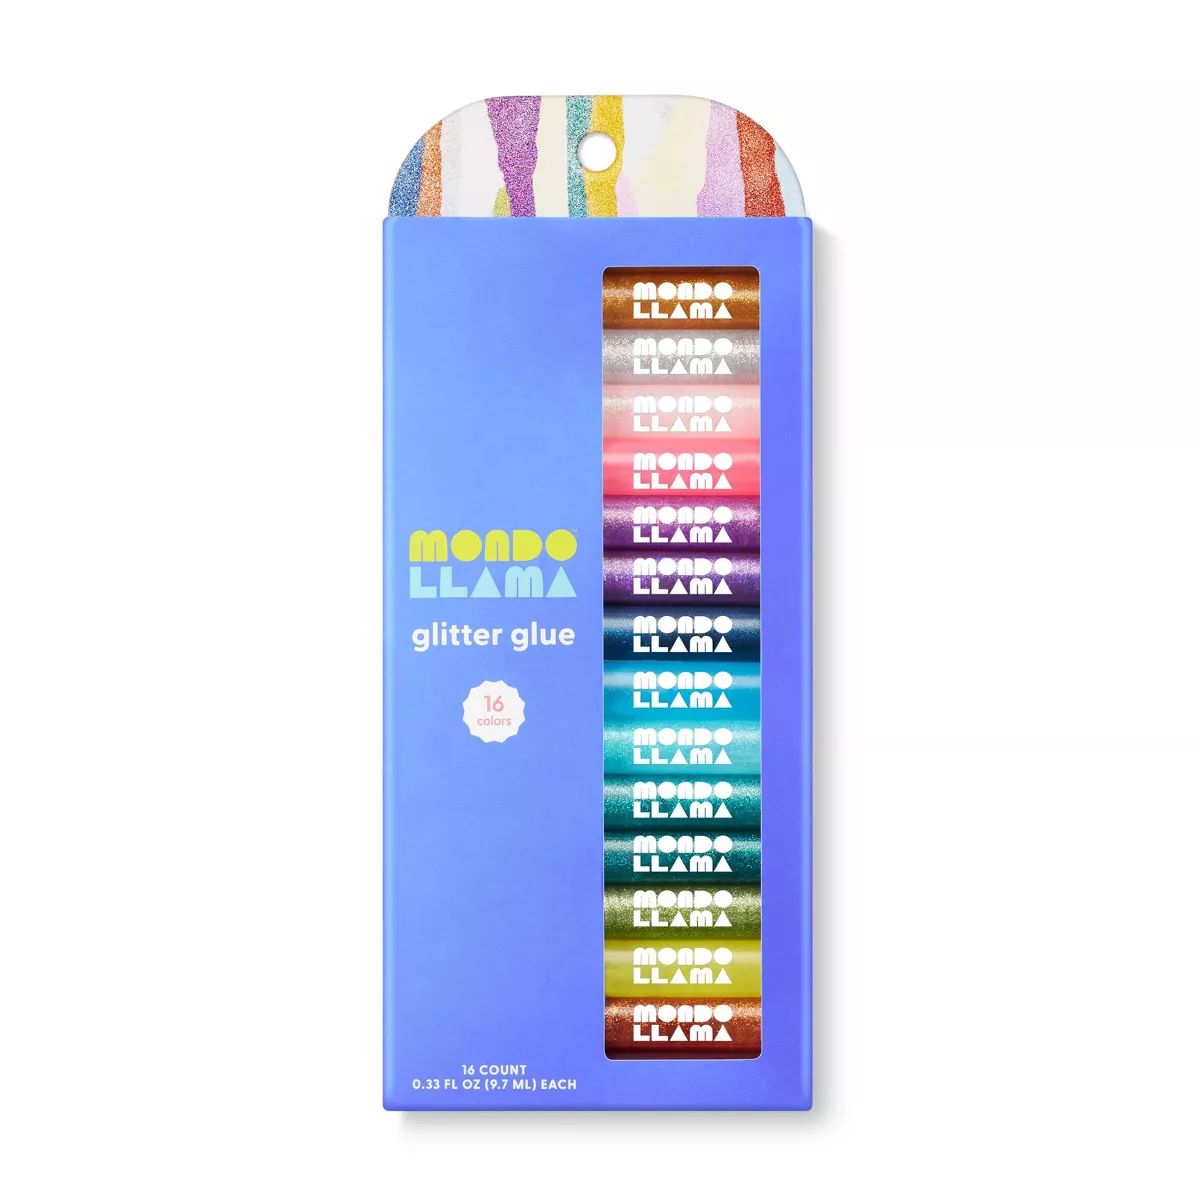 16ct Glitter Glue Pen Pack - Mondo Llama™ | Target